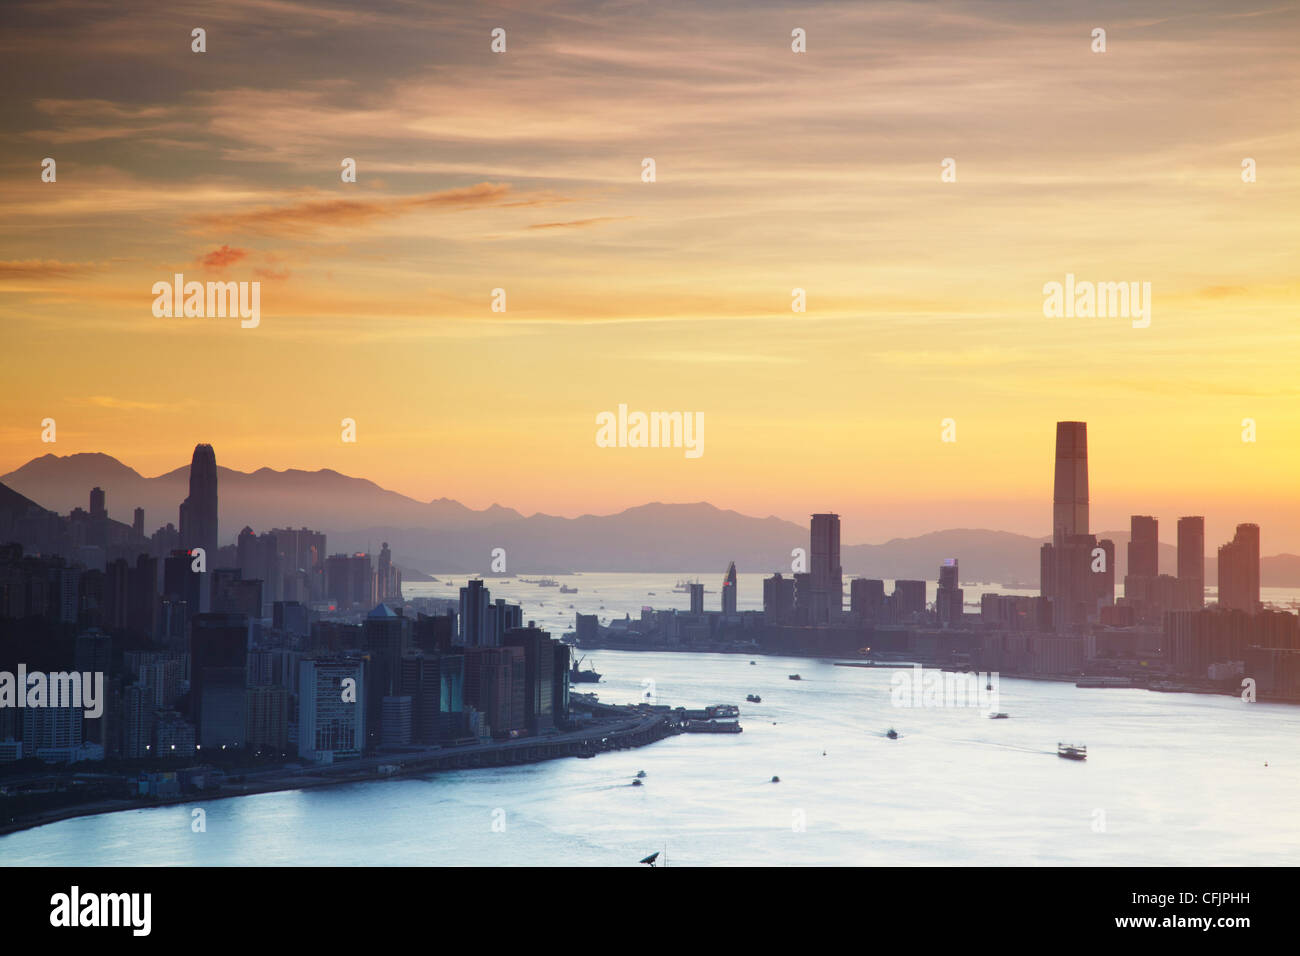 Isola di Hong Kong e Tsim Sha Tsui dall'alto al tramonto, Hong Kong, Cina, Asia Foto Stock